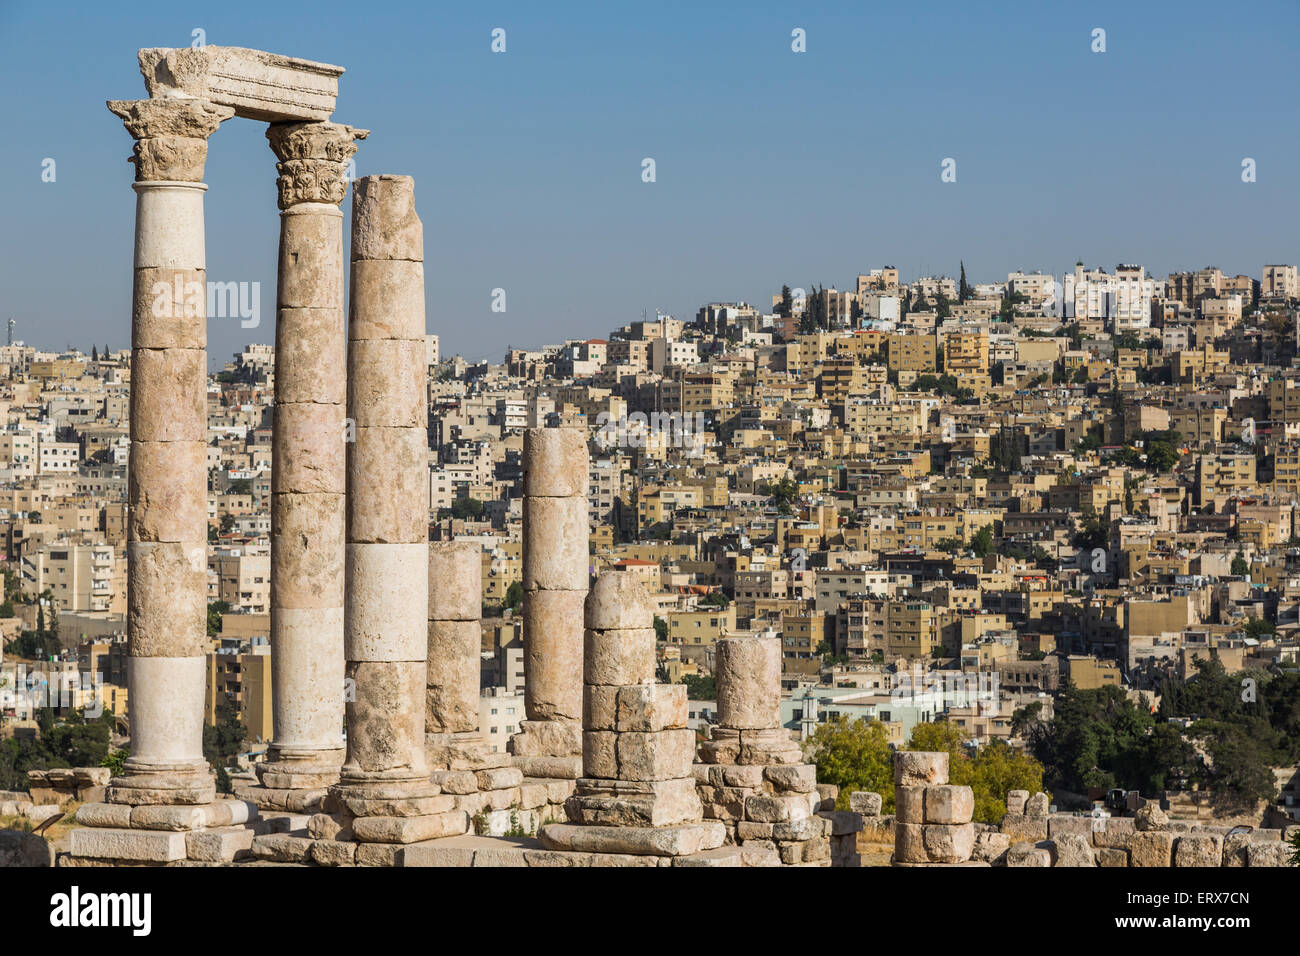 Temple of Hercules on the Citadel, Amman, Jordan Stock Photo